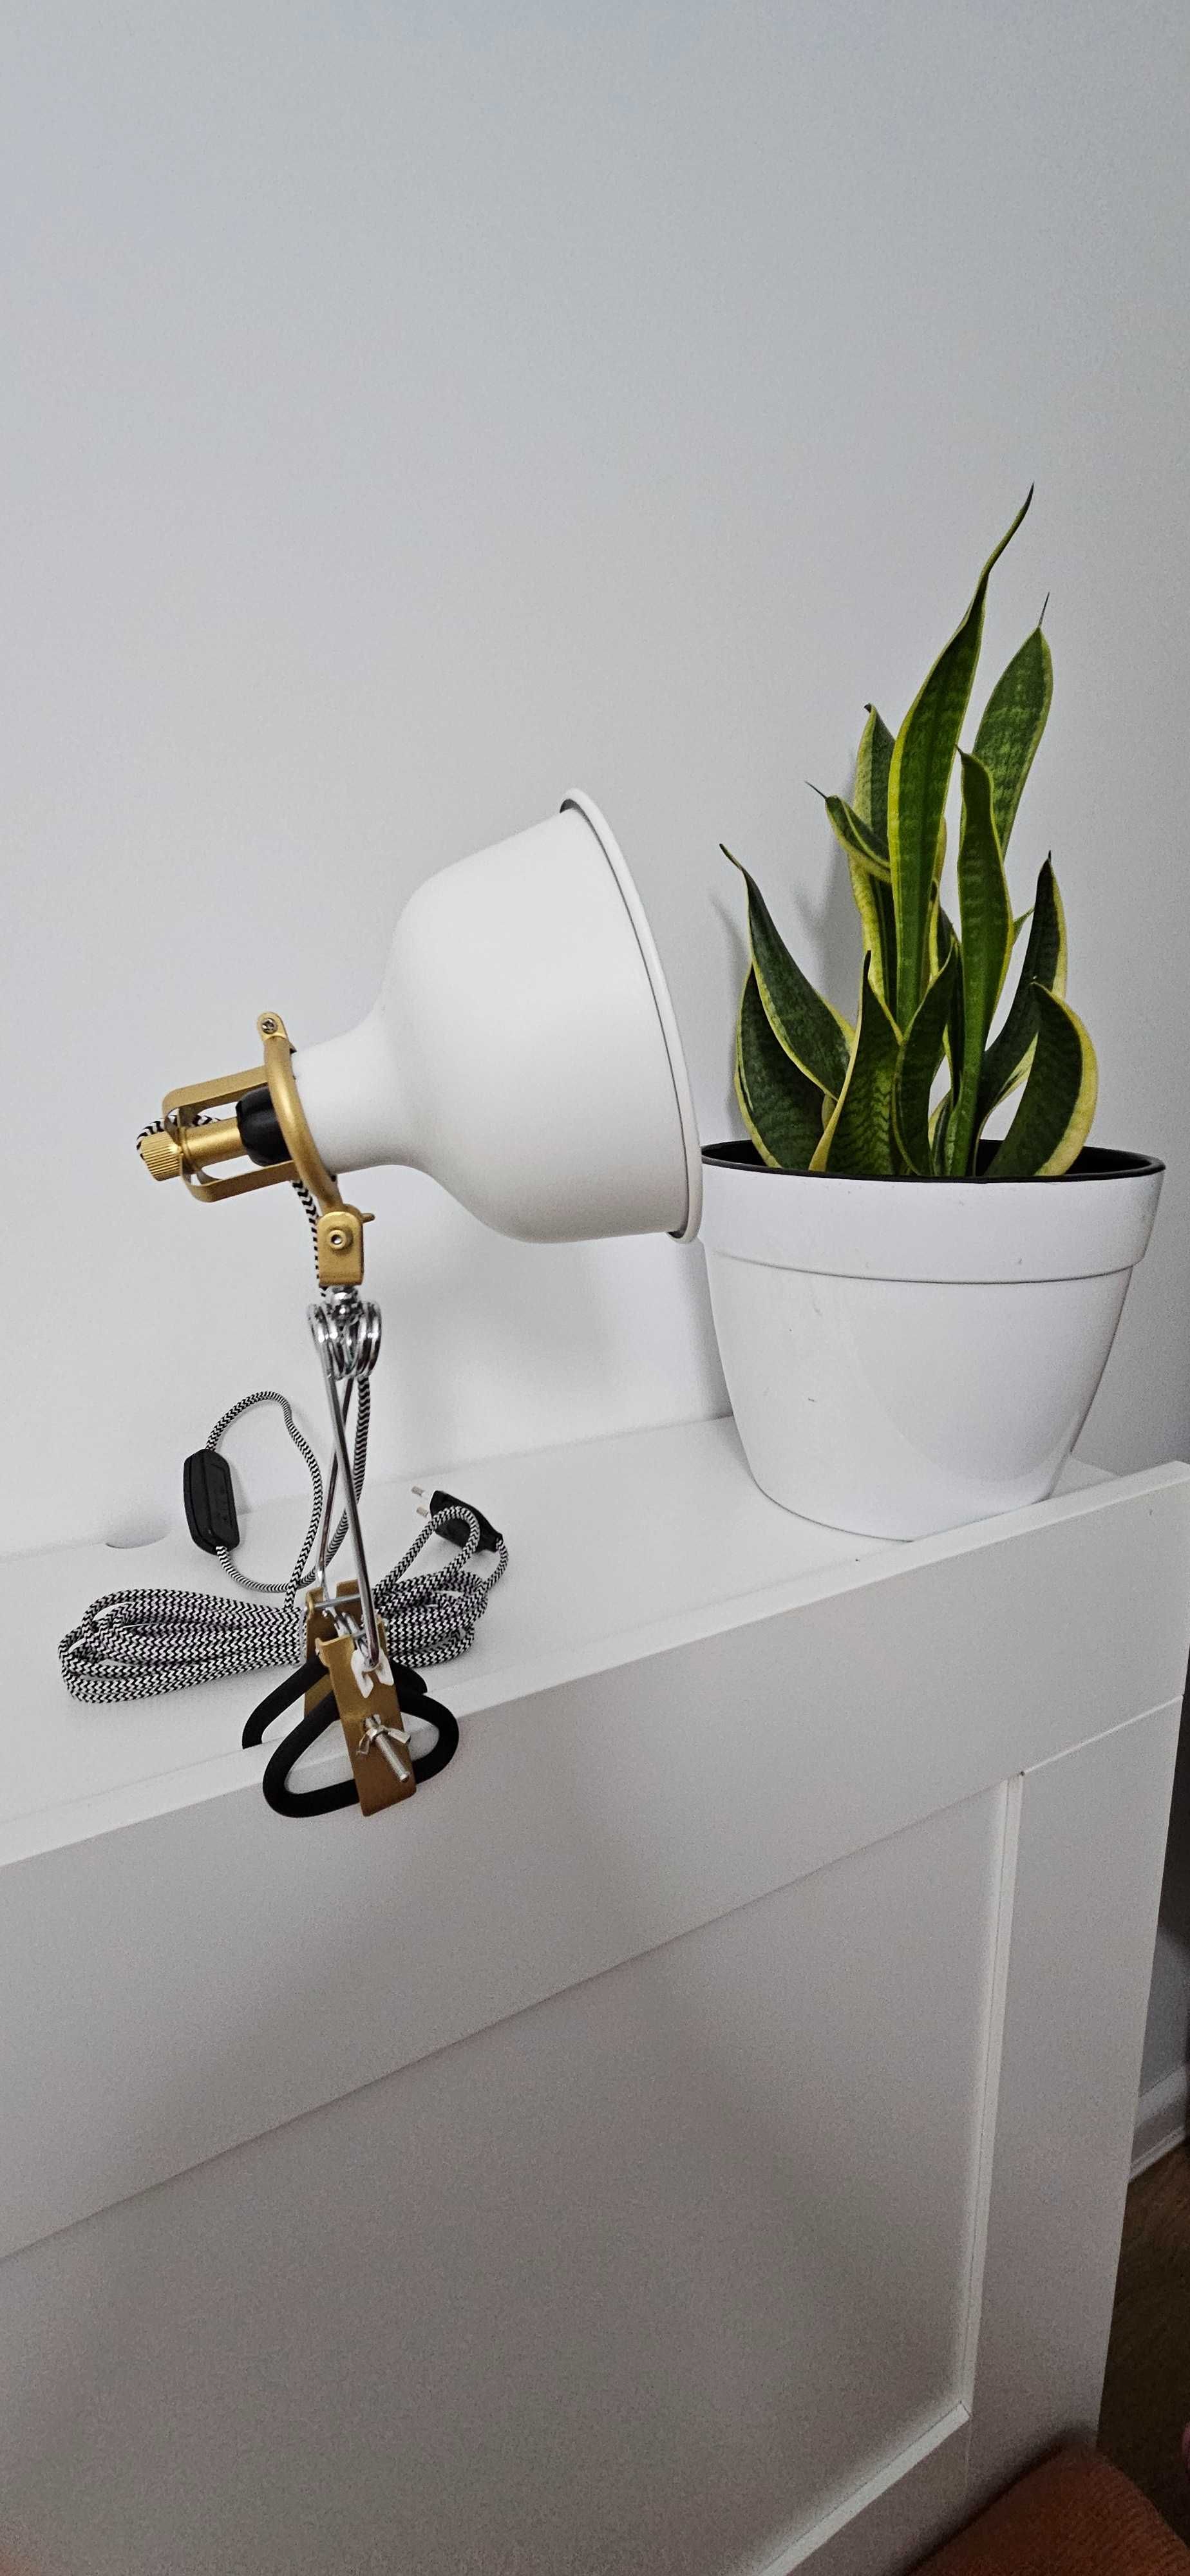 Lampă Ranarp/ Ikea